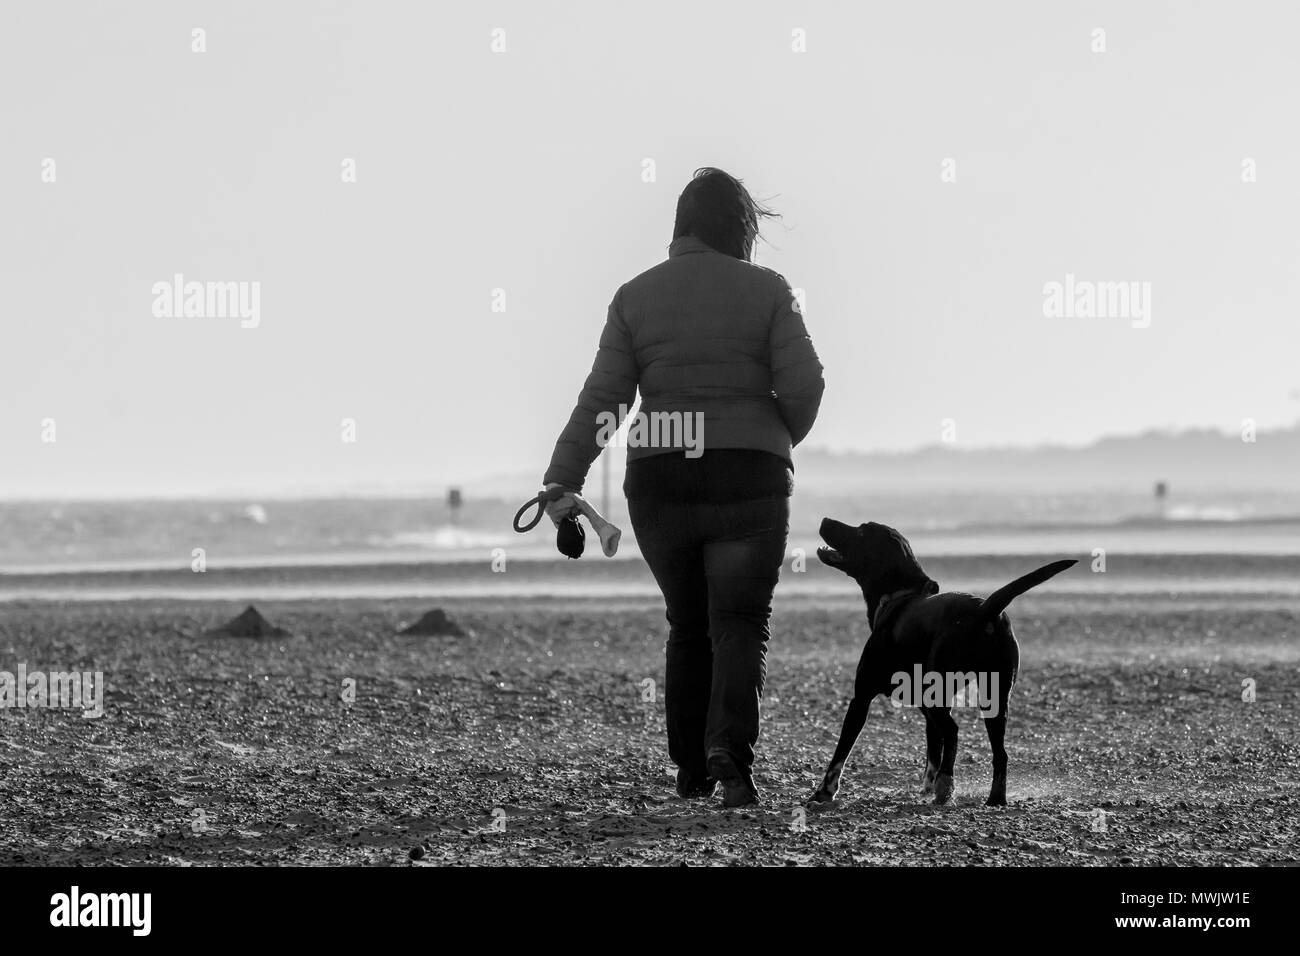 Immagine in bianco e nero della donna e il suo cane a camminare sulla spiaggia spazzate dal vento. Il cane osservando la donna come se in attesa di un trattamento o l'istruzione. Foto Stock